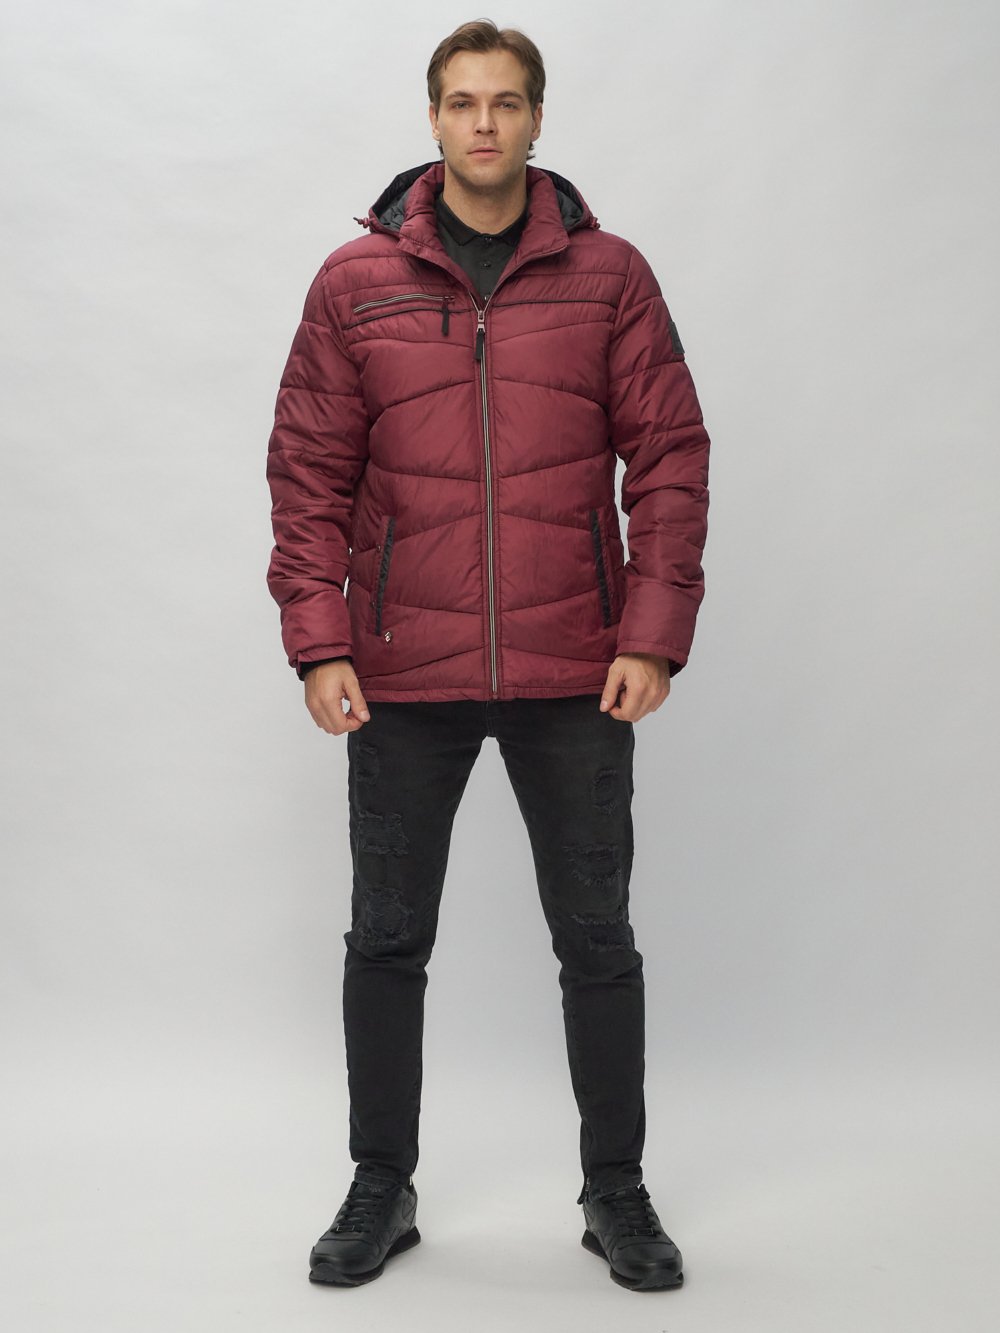 Купить оптом Куртка спортивная мужская с капюшоном бордового цвета 62188Bo в Екатеринбурге